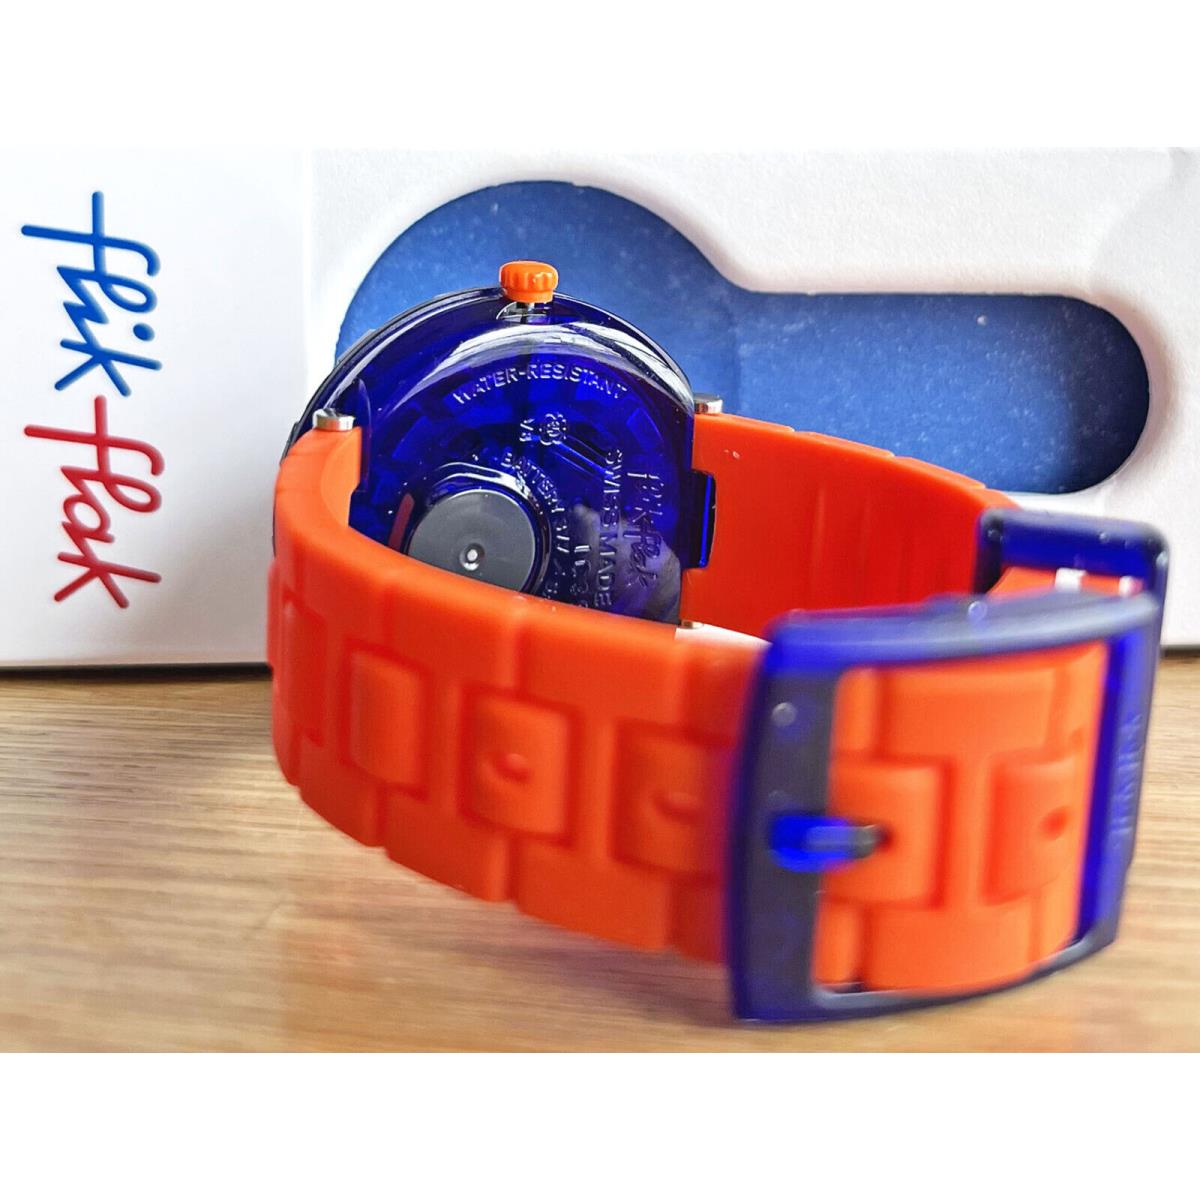 Swatch watch ORANGEBRICK - Dial: Blue, Band: Orange, Bezel: Blue